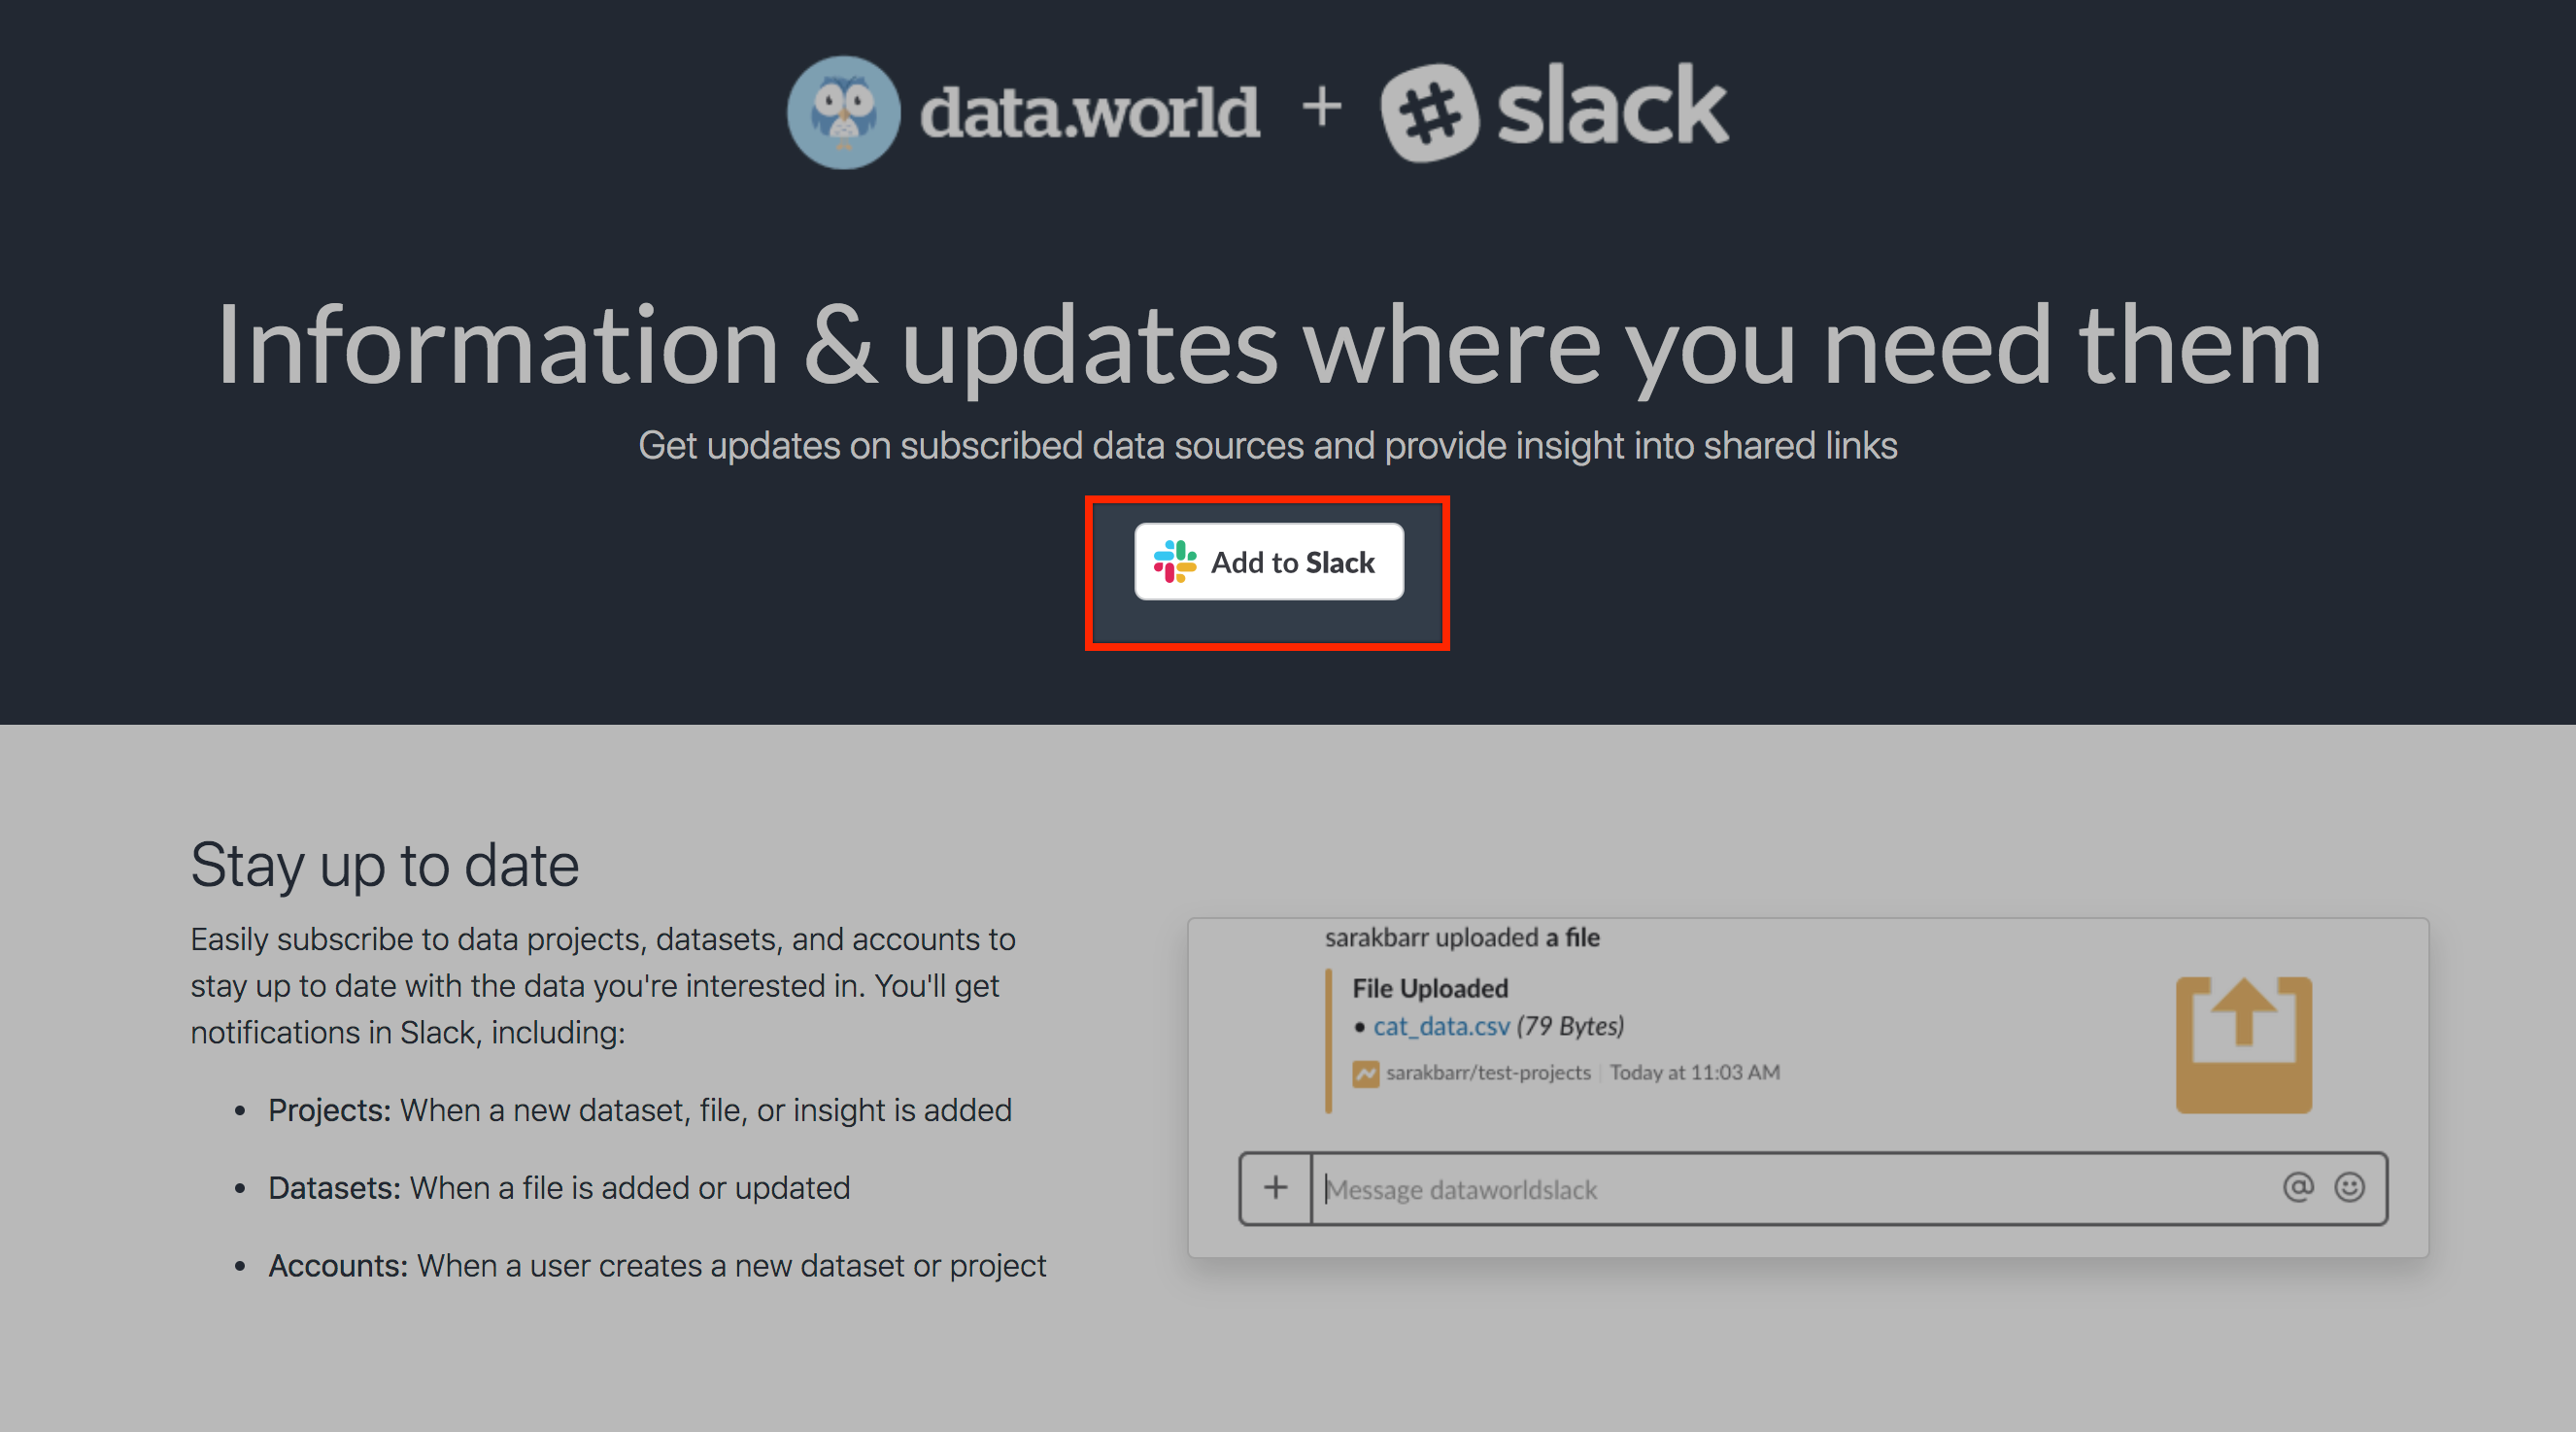 slack-integrations-page-1.png